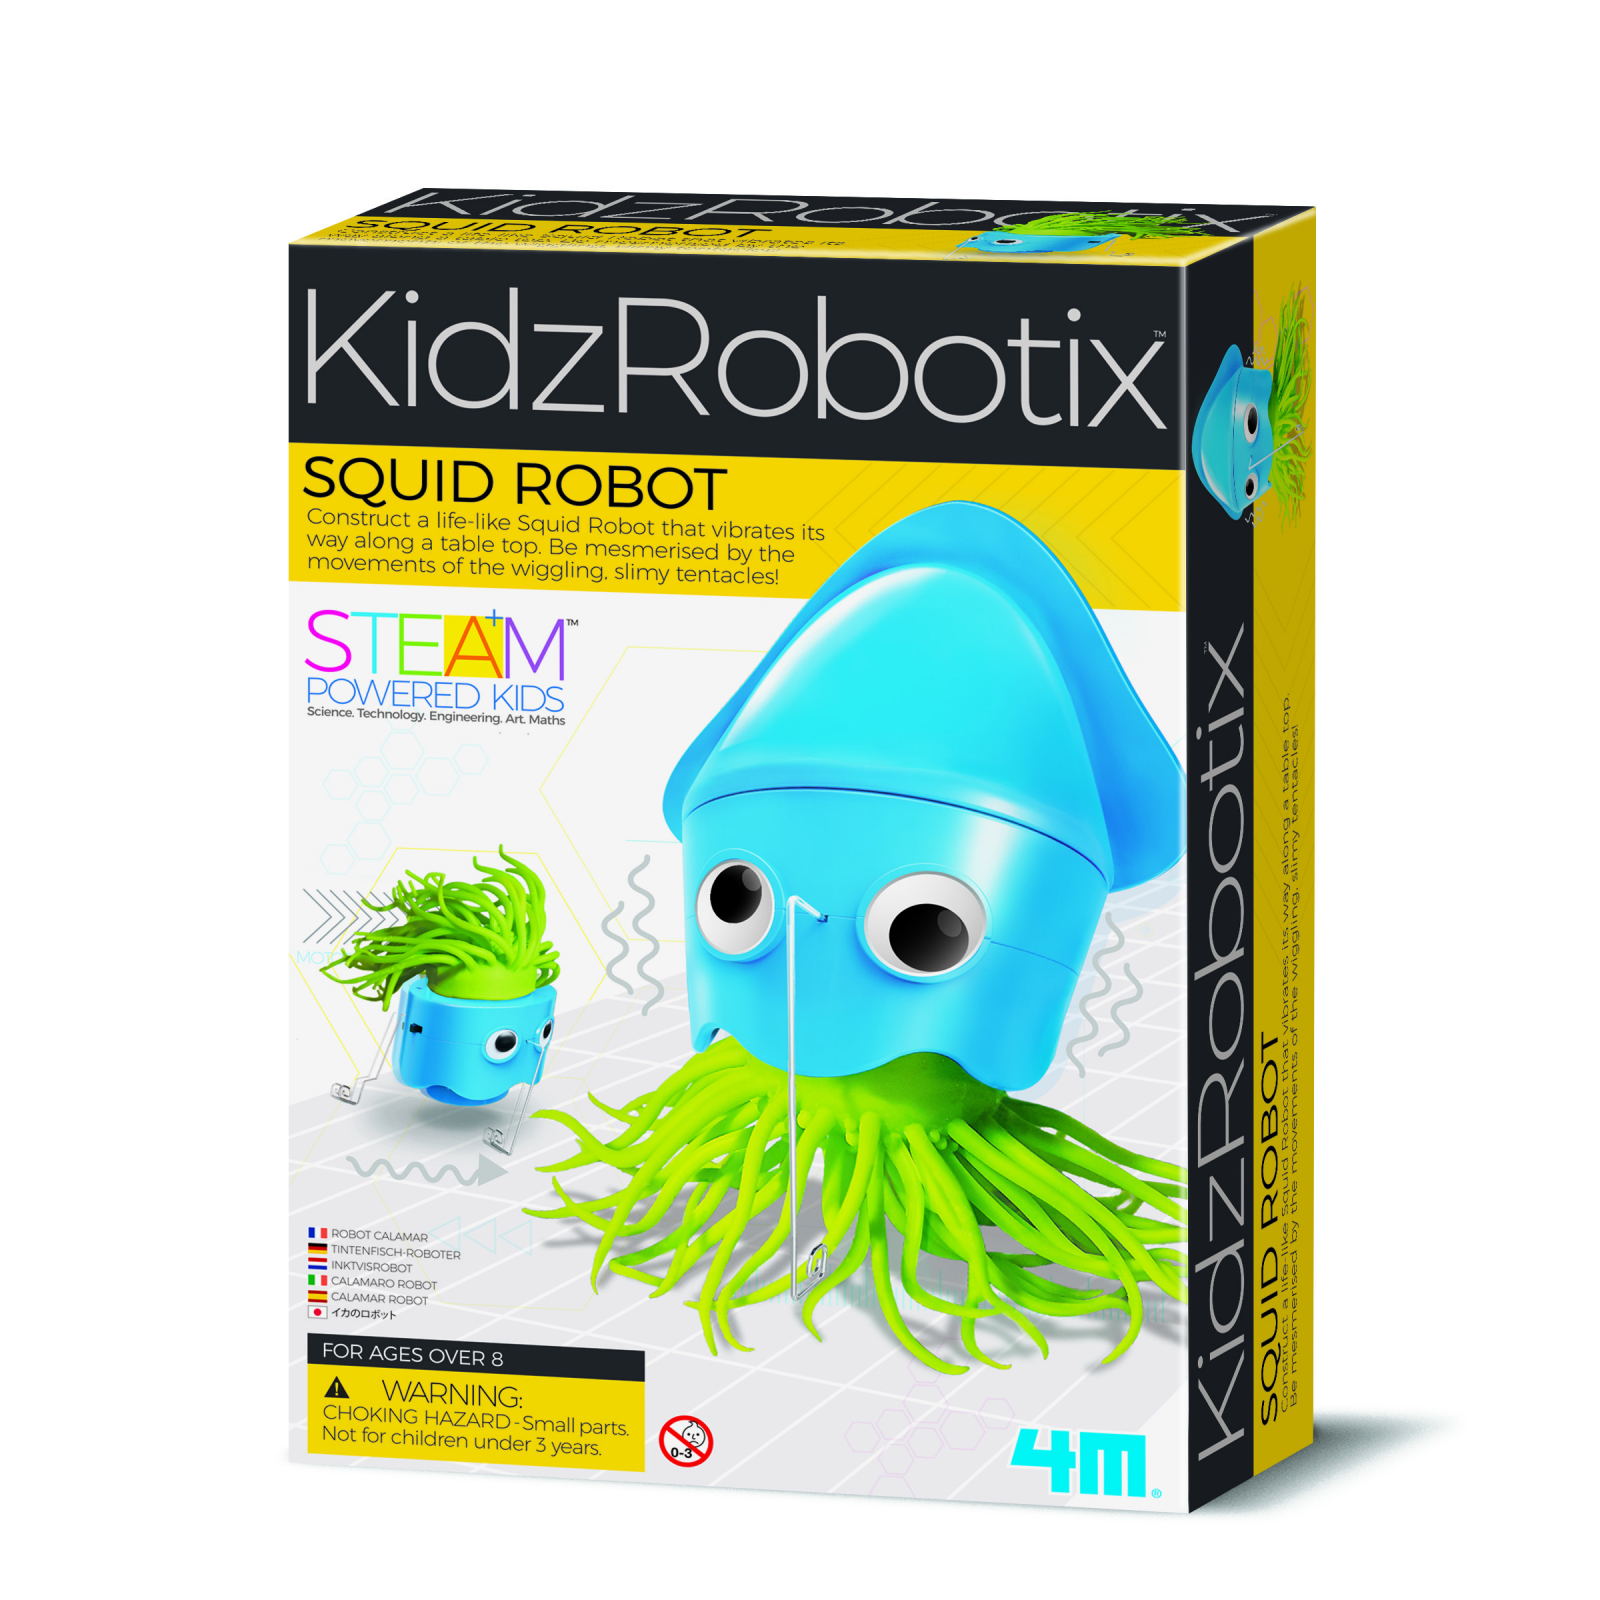 Kit constructie robot - squid robot, kidz robotix image5